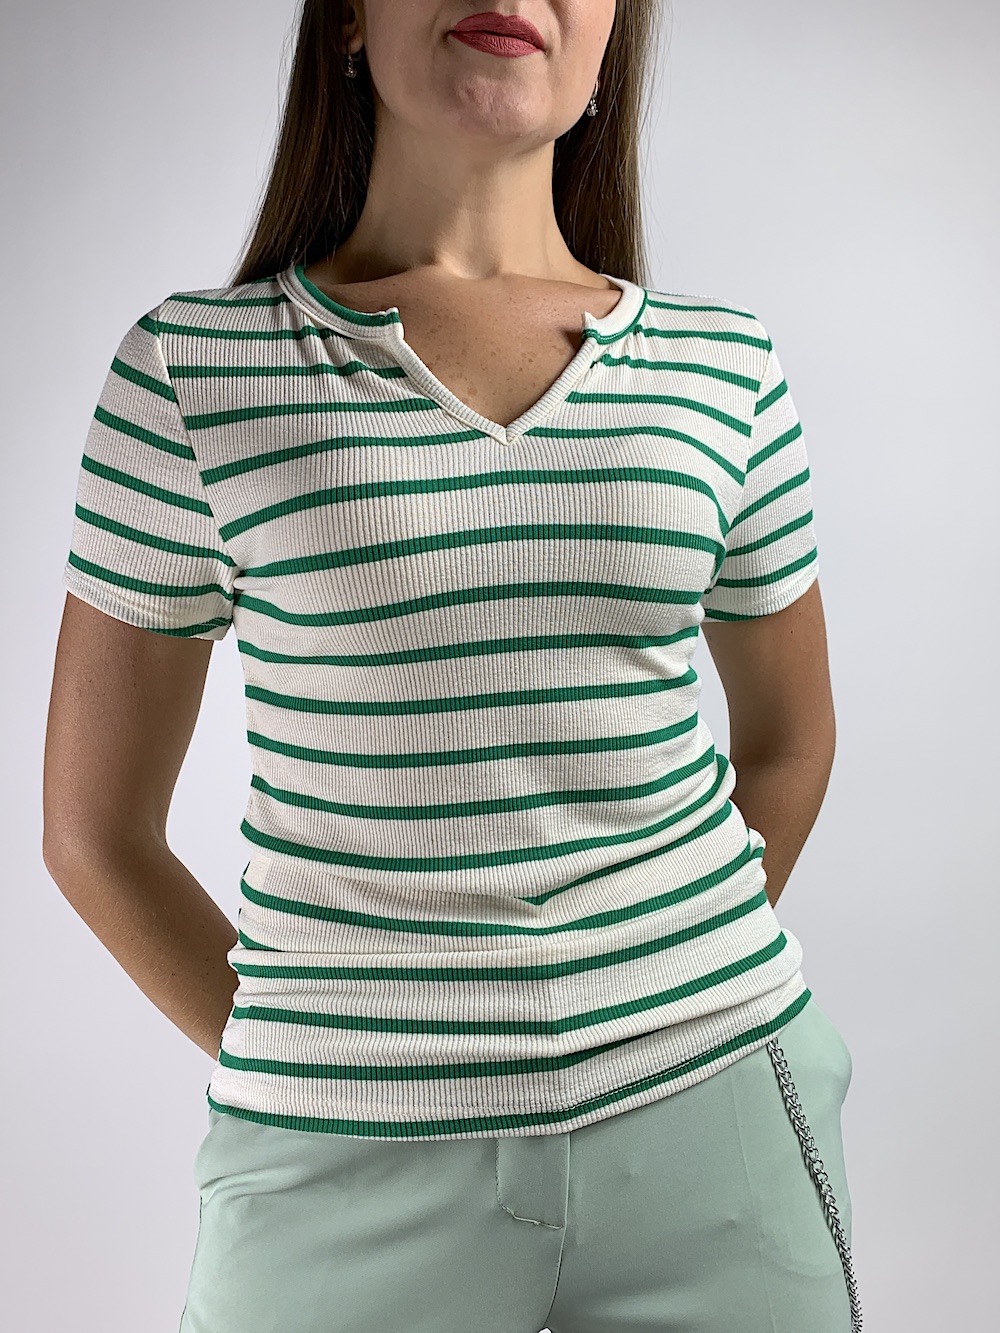 Біла віскозна футболка в горизонтальну смужку зеленого кольору, італійського бренду Dixie